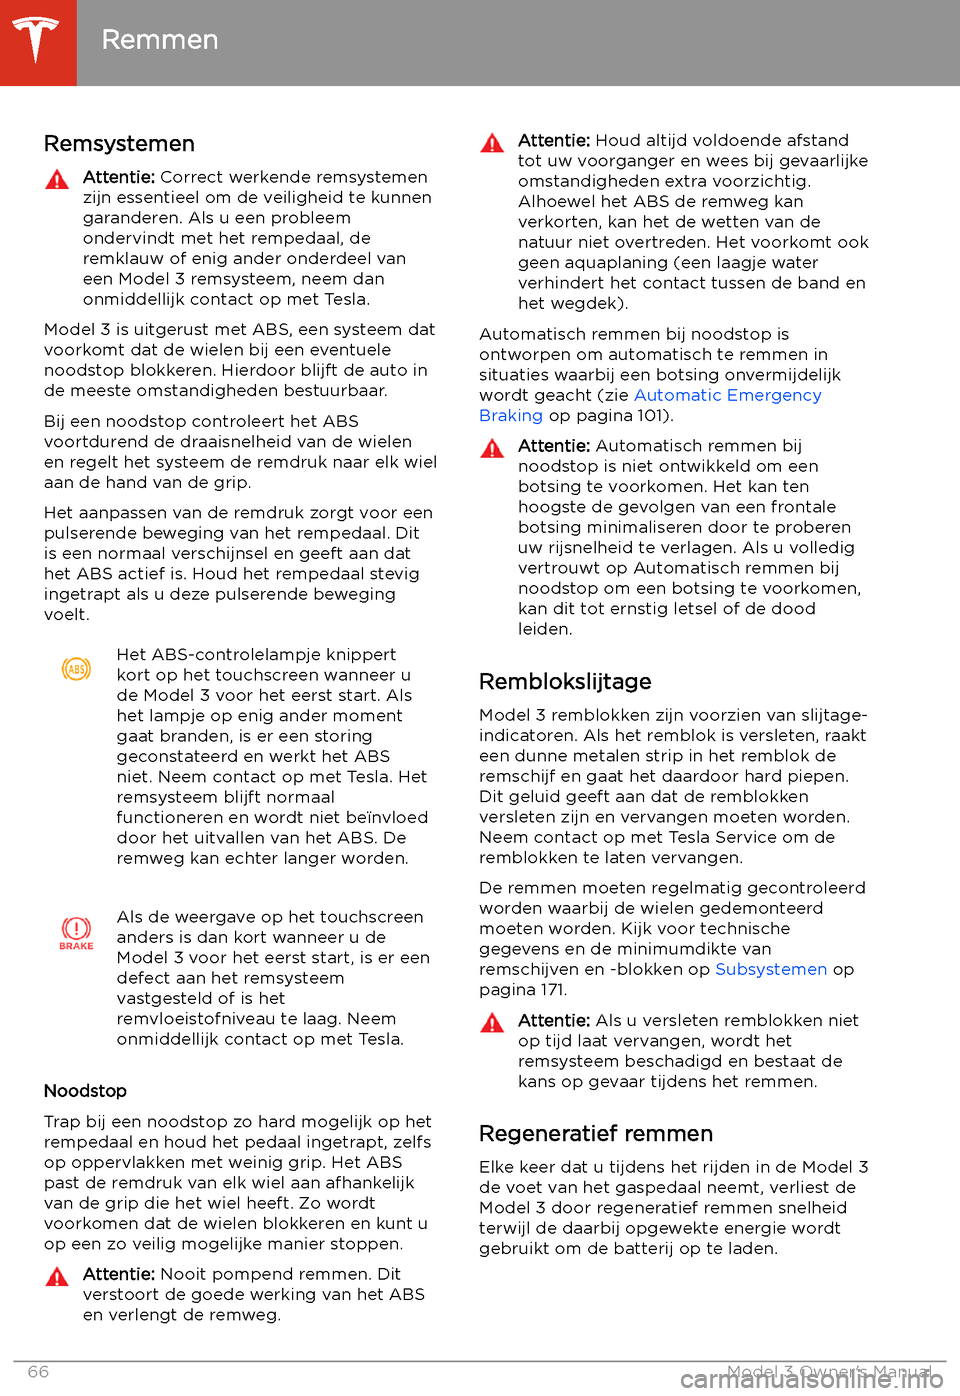 TESLA MODEL 3 2019  Handleiding (in Dutch) Remmen
Remsystemen
Attentie:  Correct werkende remsystemen
zijn essentieel om de veiligheid te kunnen
garanderen. Als u een probleem
ondervindt met het rempedaal, de
remklauw of enig ander onderdeel v